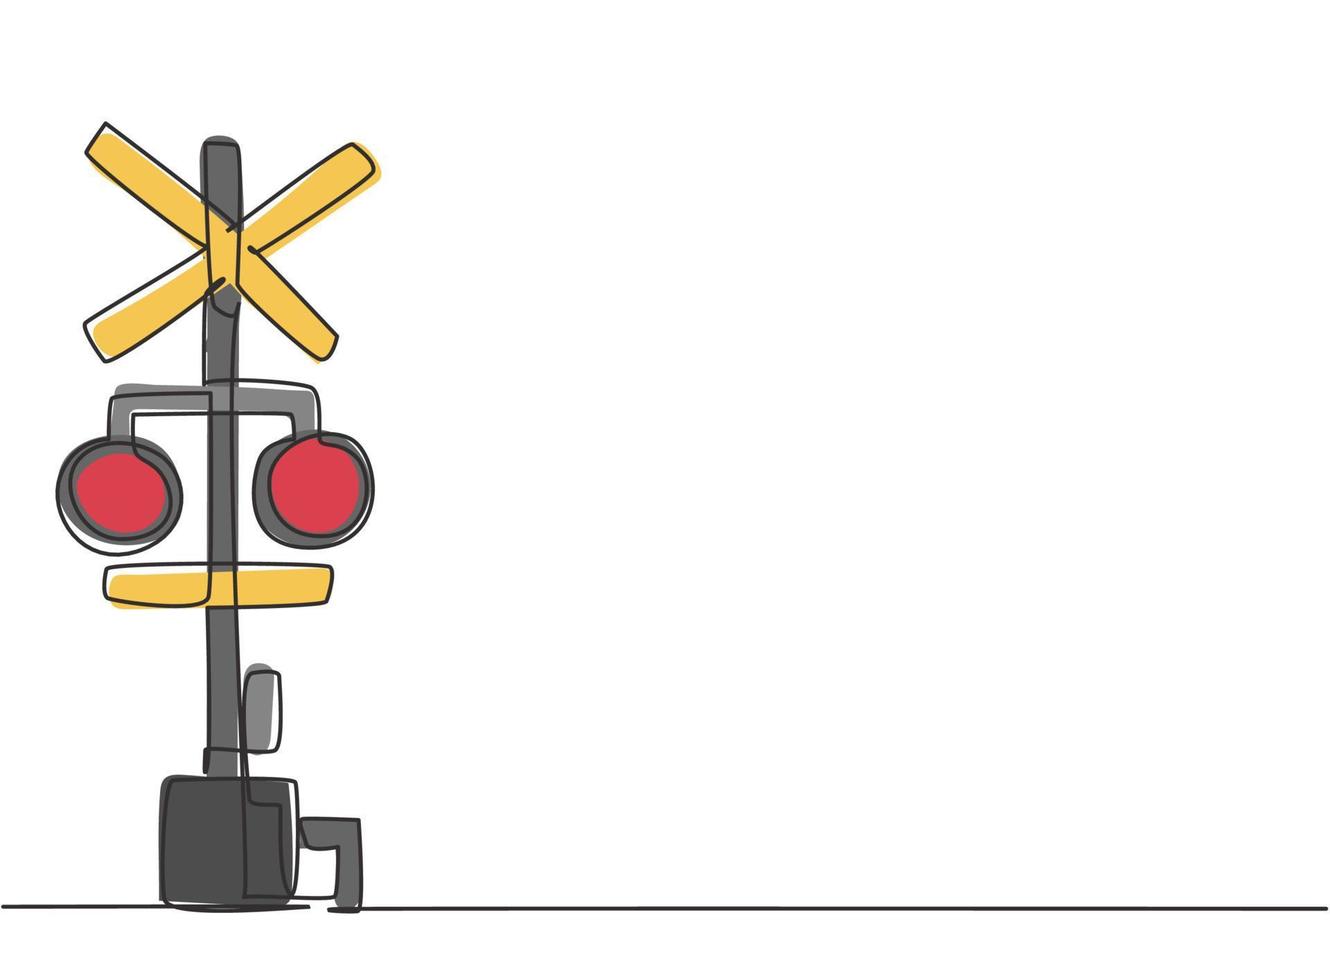 disegno a tratto unico di barriera ferroviaria con segnaletica e luci di segnalazione in posizione aperta che consente ai veicoli di attraversare le linee ferroviarie. illustrazione vettoriale grafica di disegno di disegno di linea continua moderna